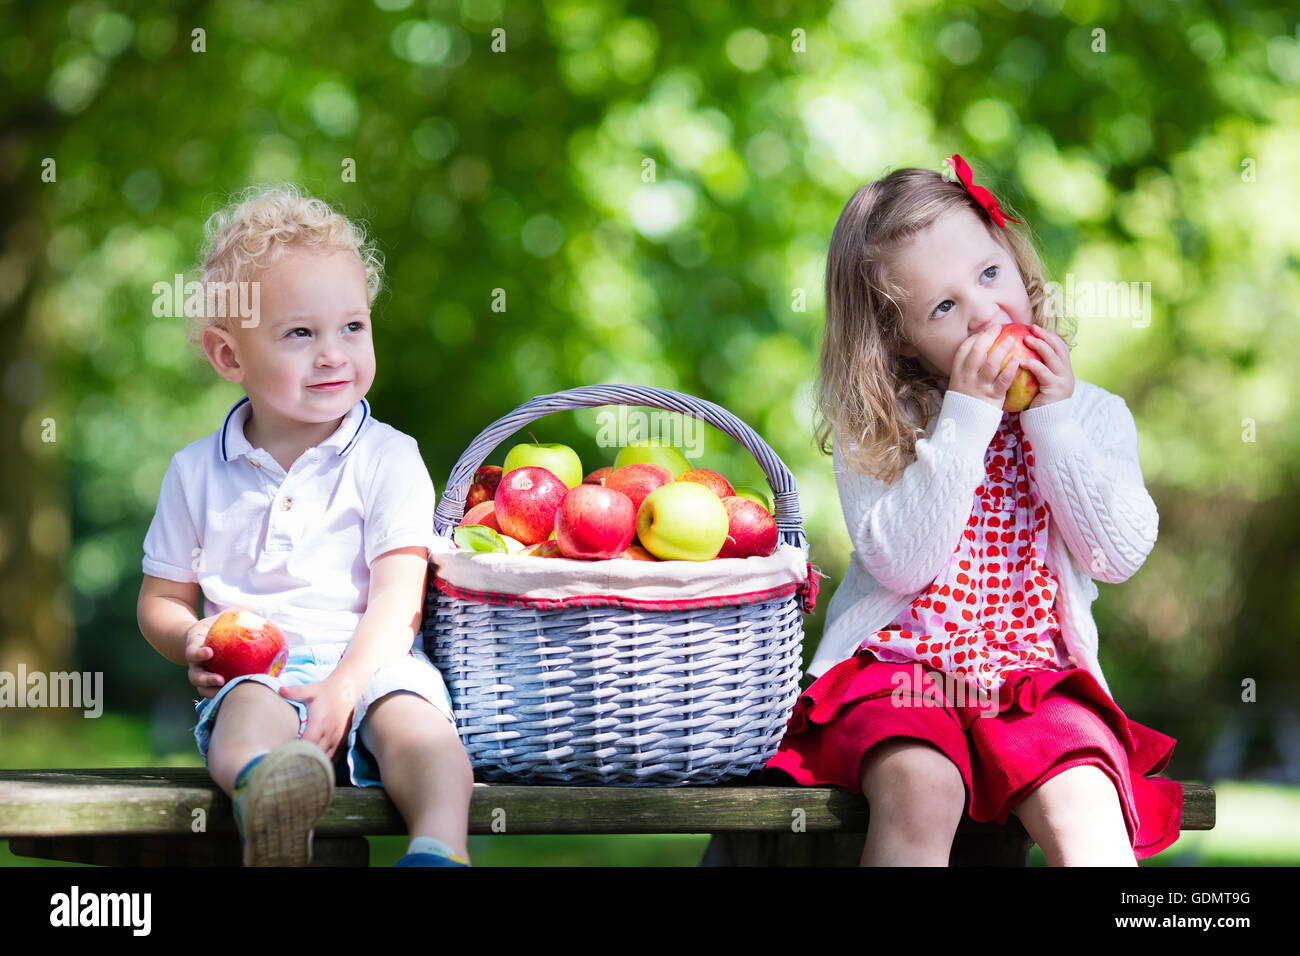 Ребенку можно свежее яблоко. Девочка с яблоками. Дети с корзинкой. Дети кушают яблоки в саду. Фрукты для детей.